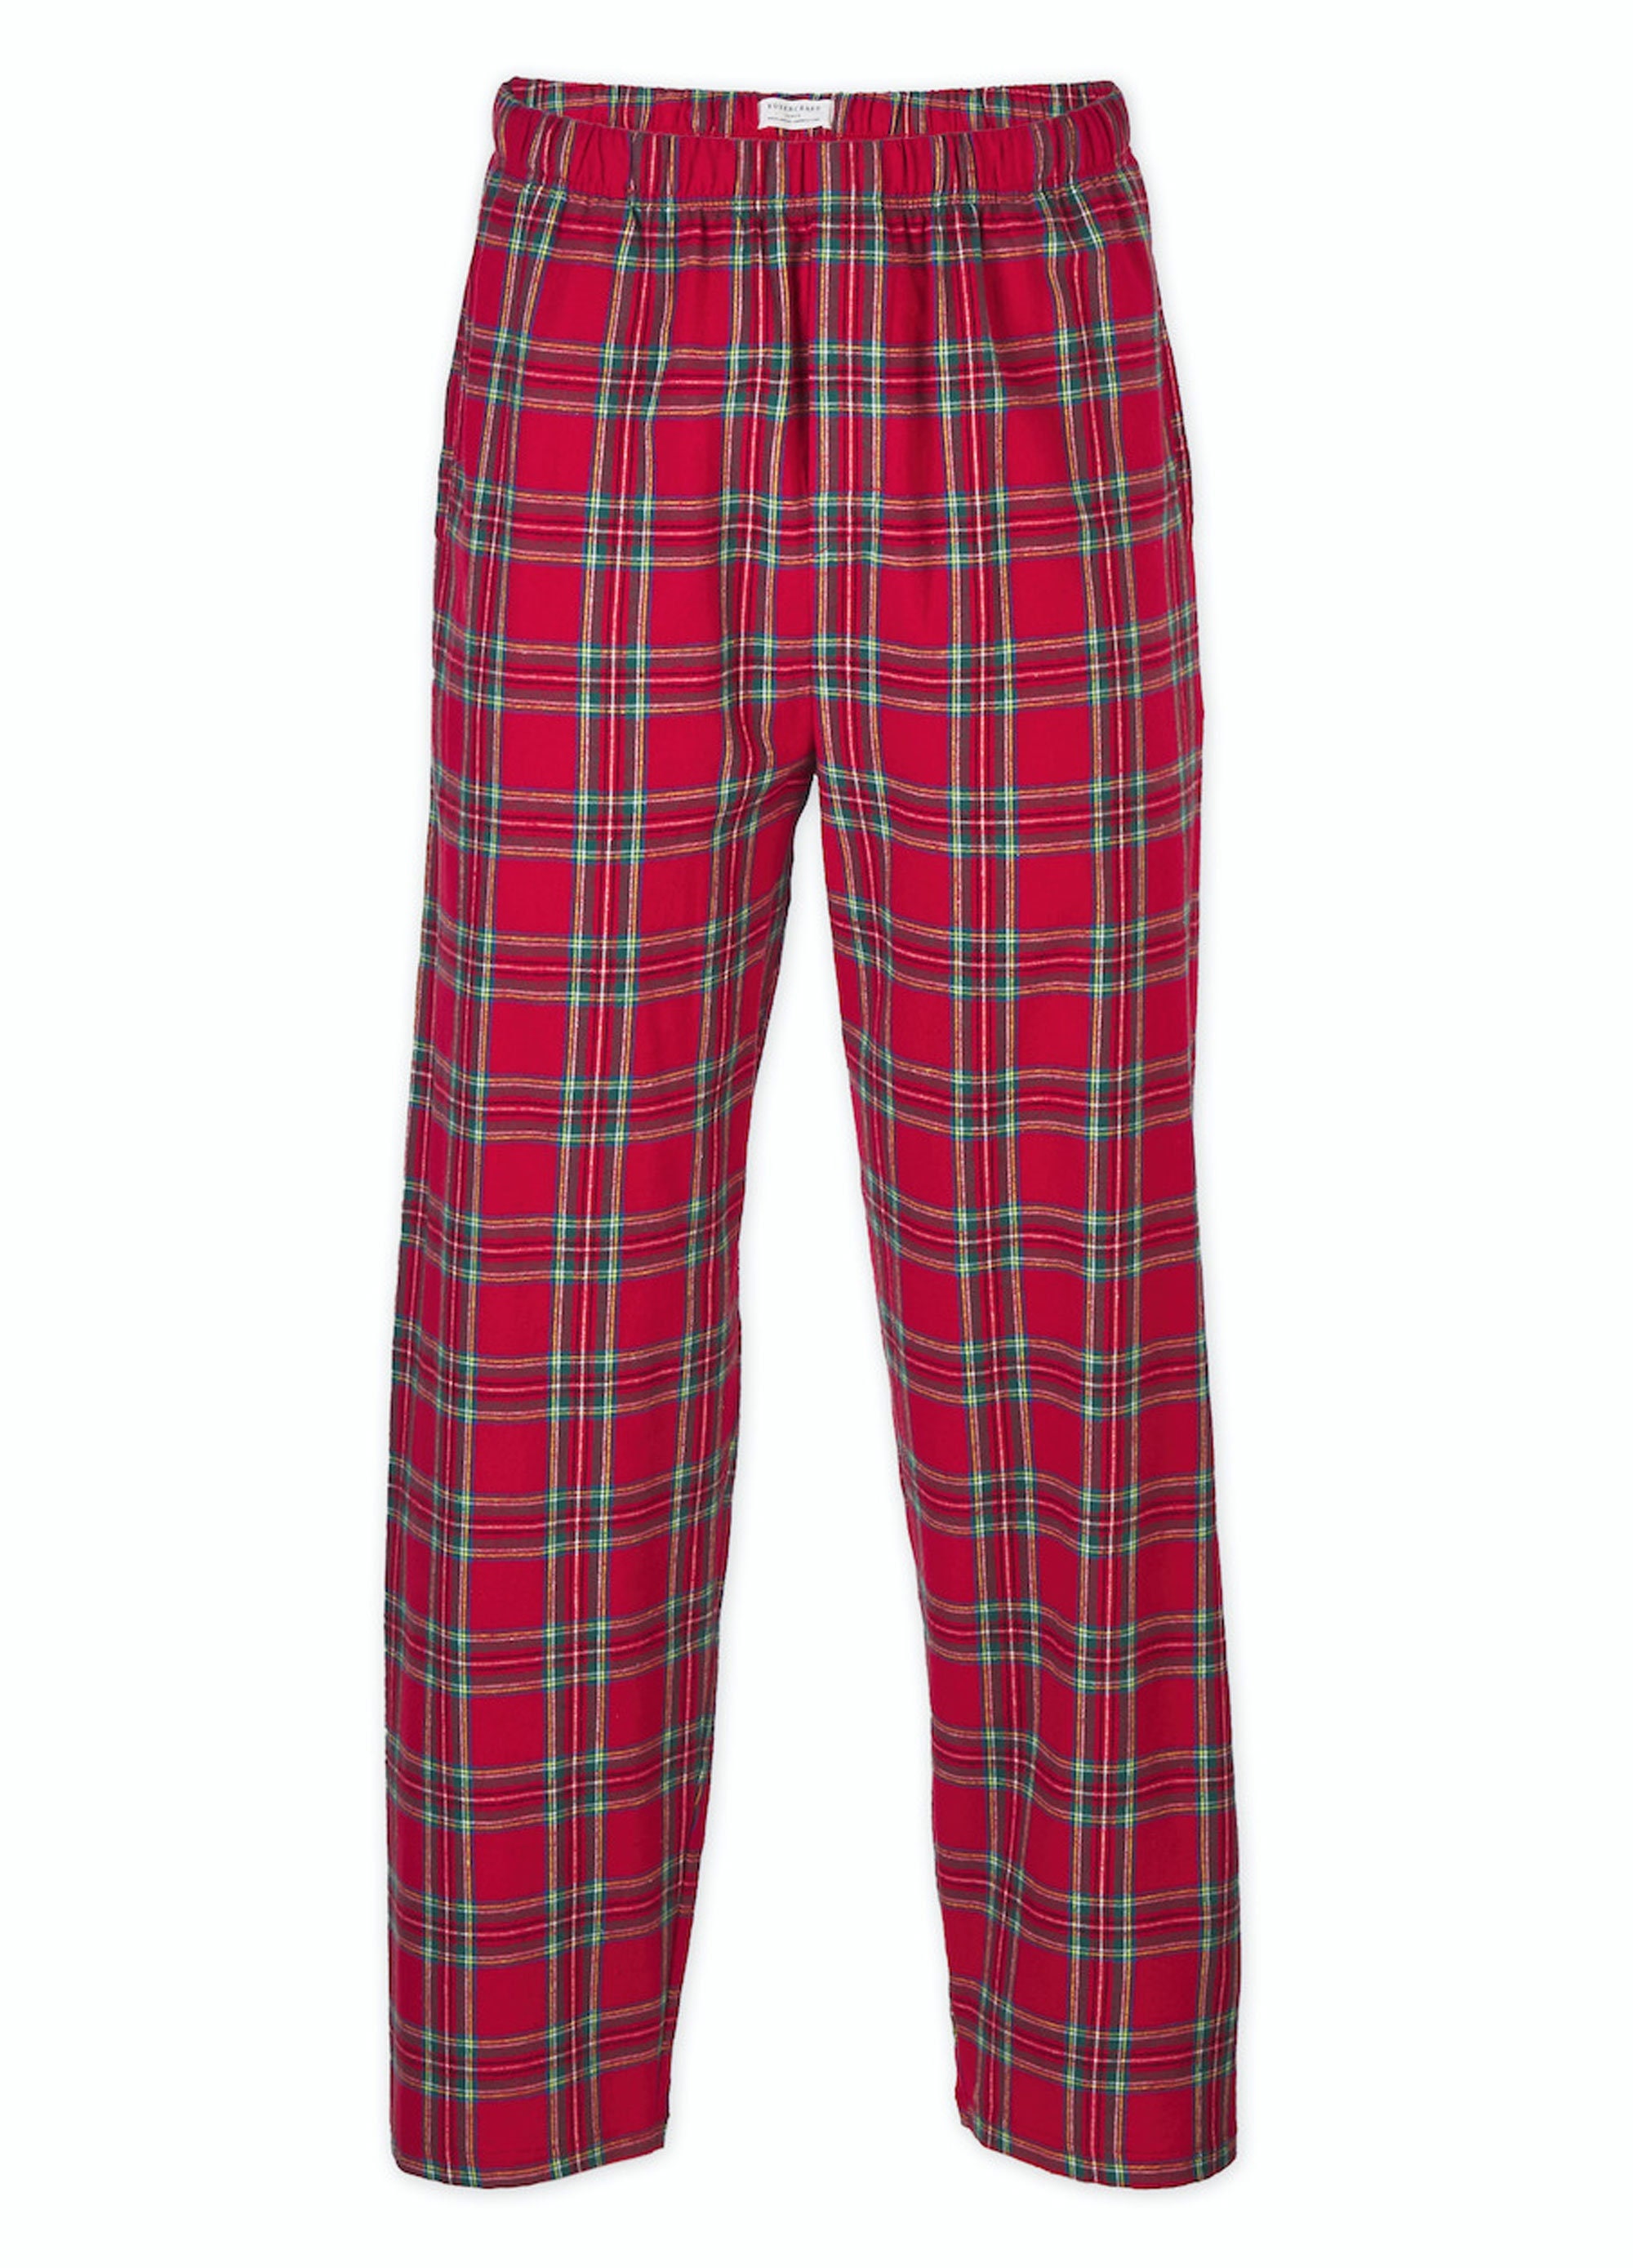 Croft & Barrow Lumberjack Plaid Flannel Fleece Sleep Pants Lounge PJ Pajamas  XL